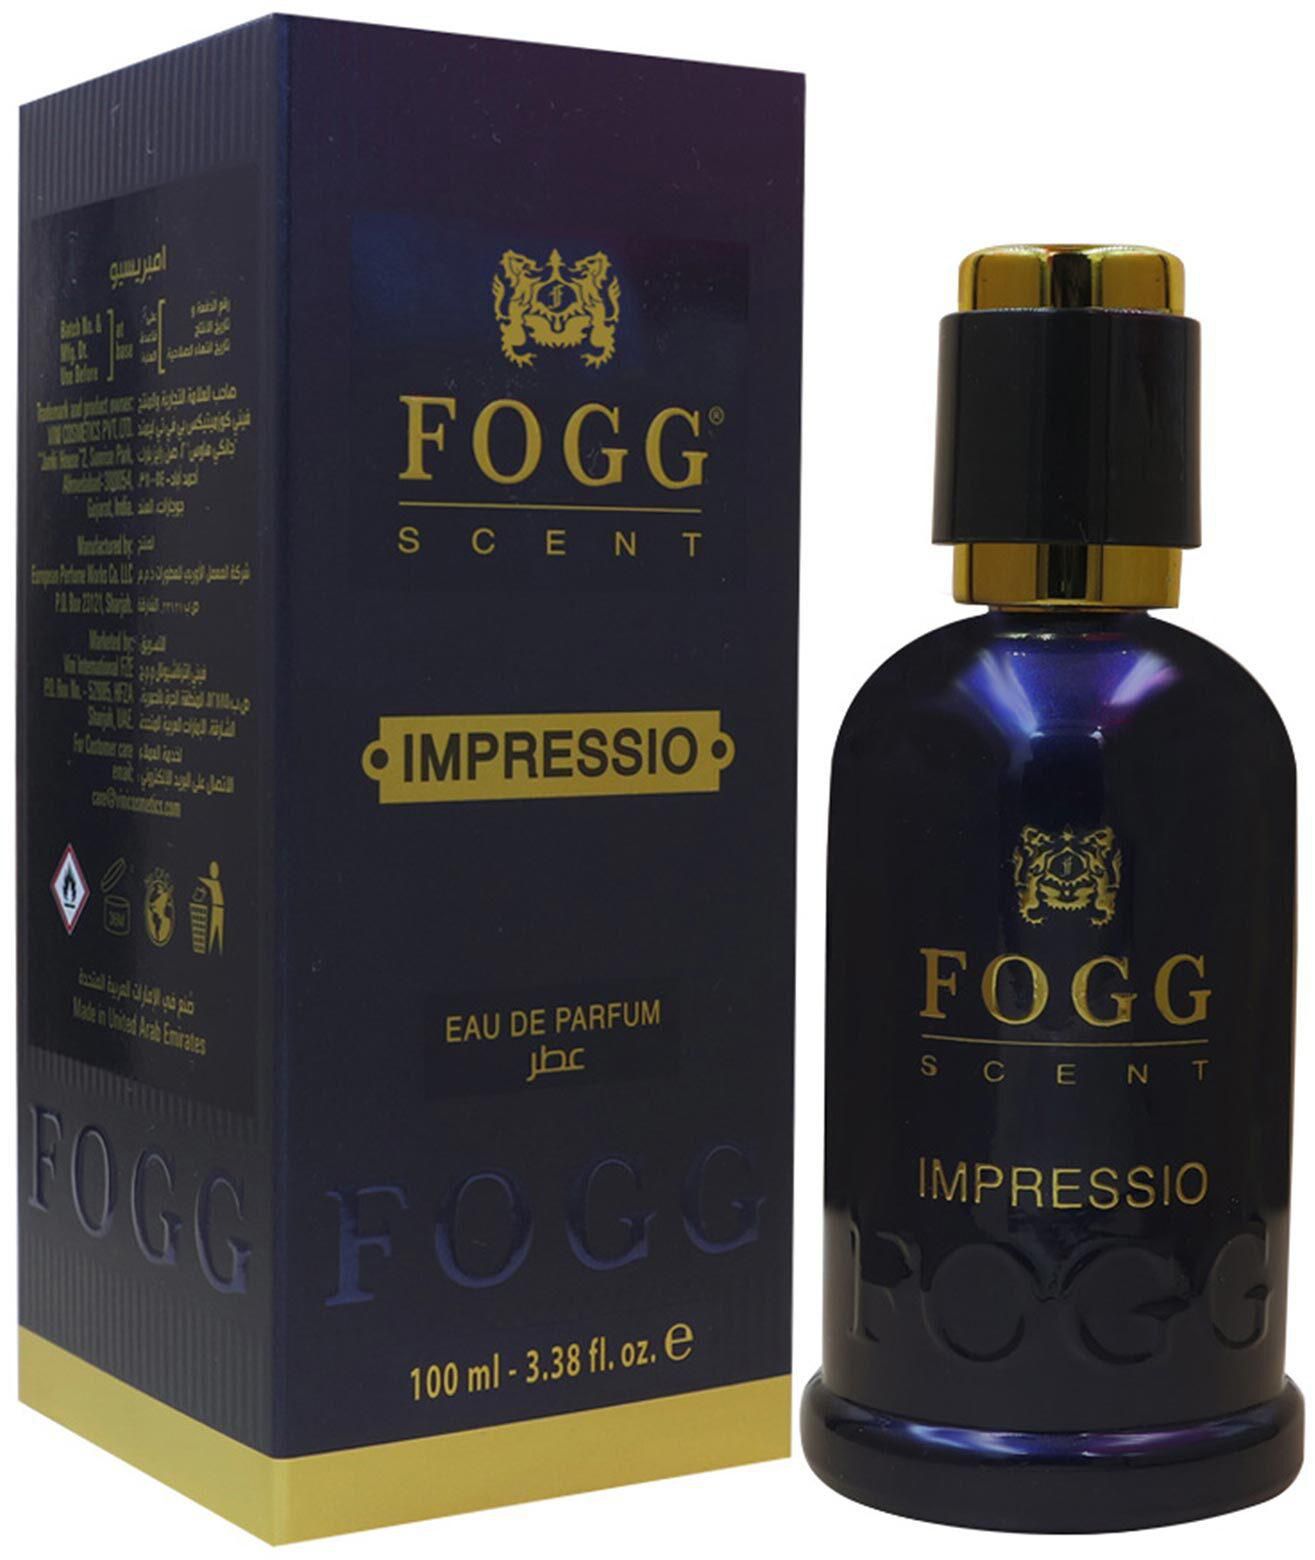 Fogg Impressio for men eau de parfum 100ml